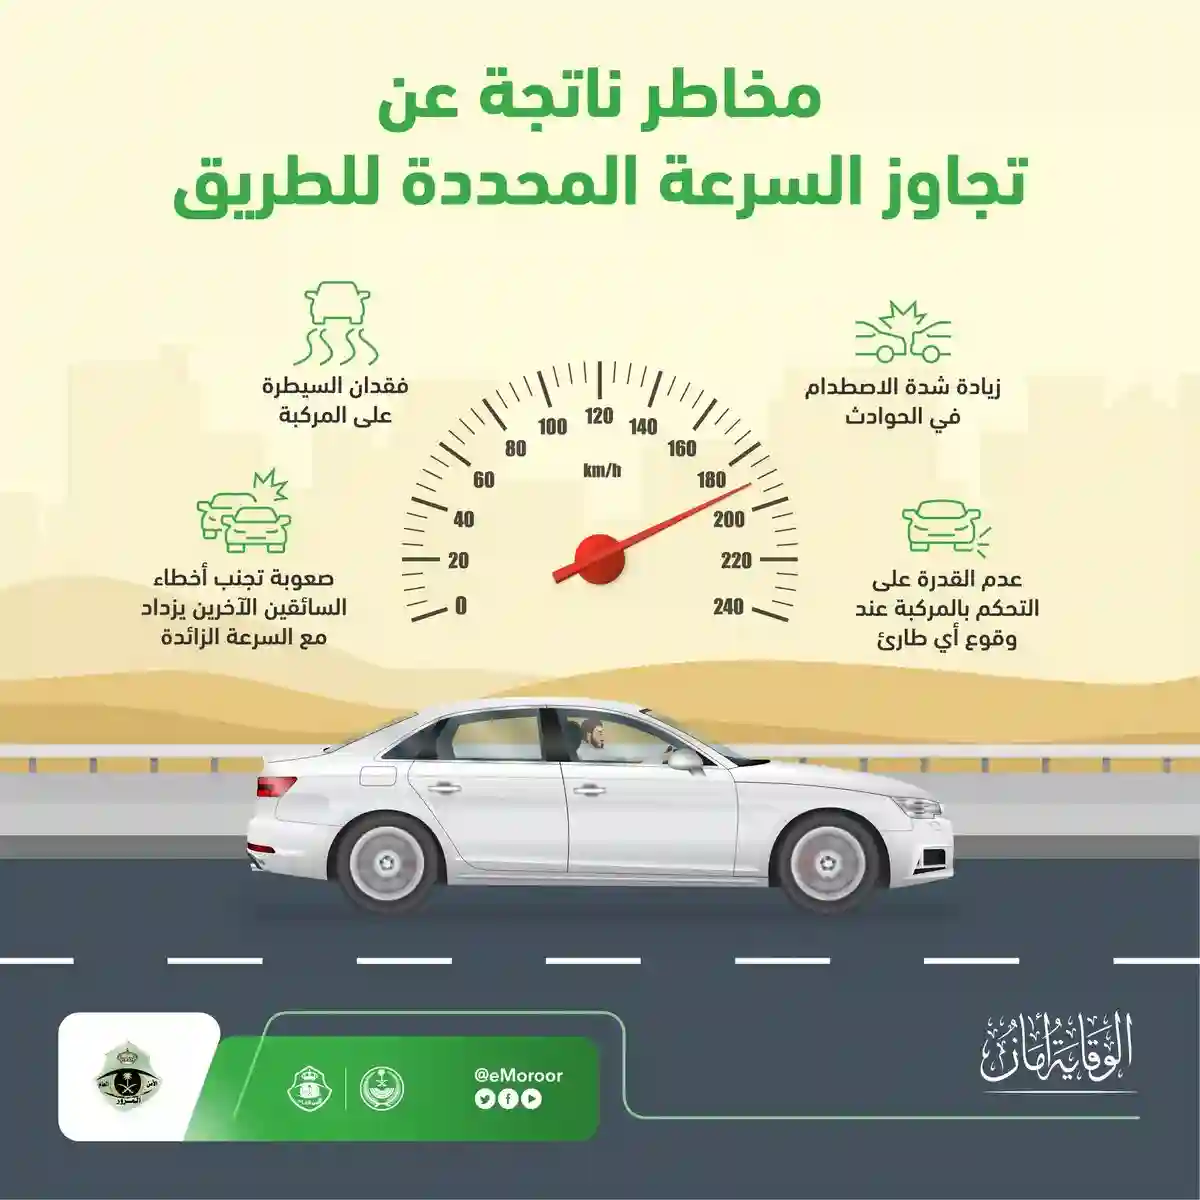 المرور السعودي يحذر من 4 مخاطر لتجاوز السرعة المحددة في الطرقات